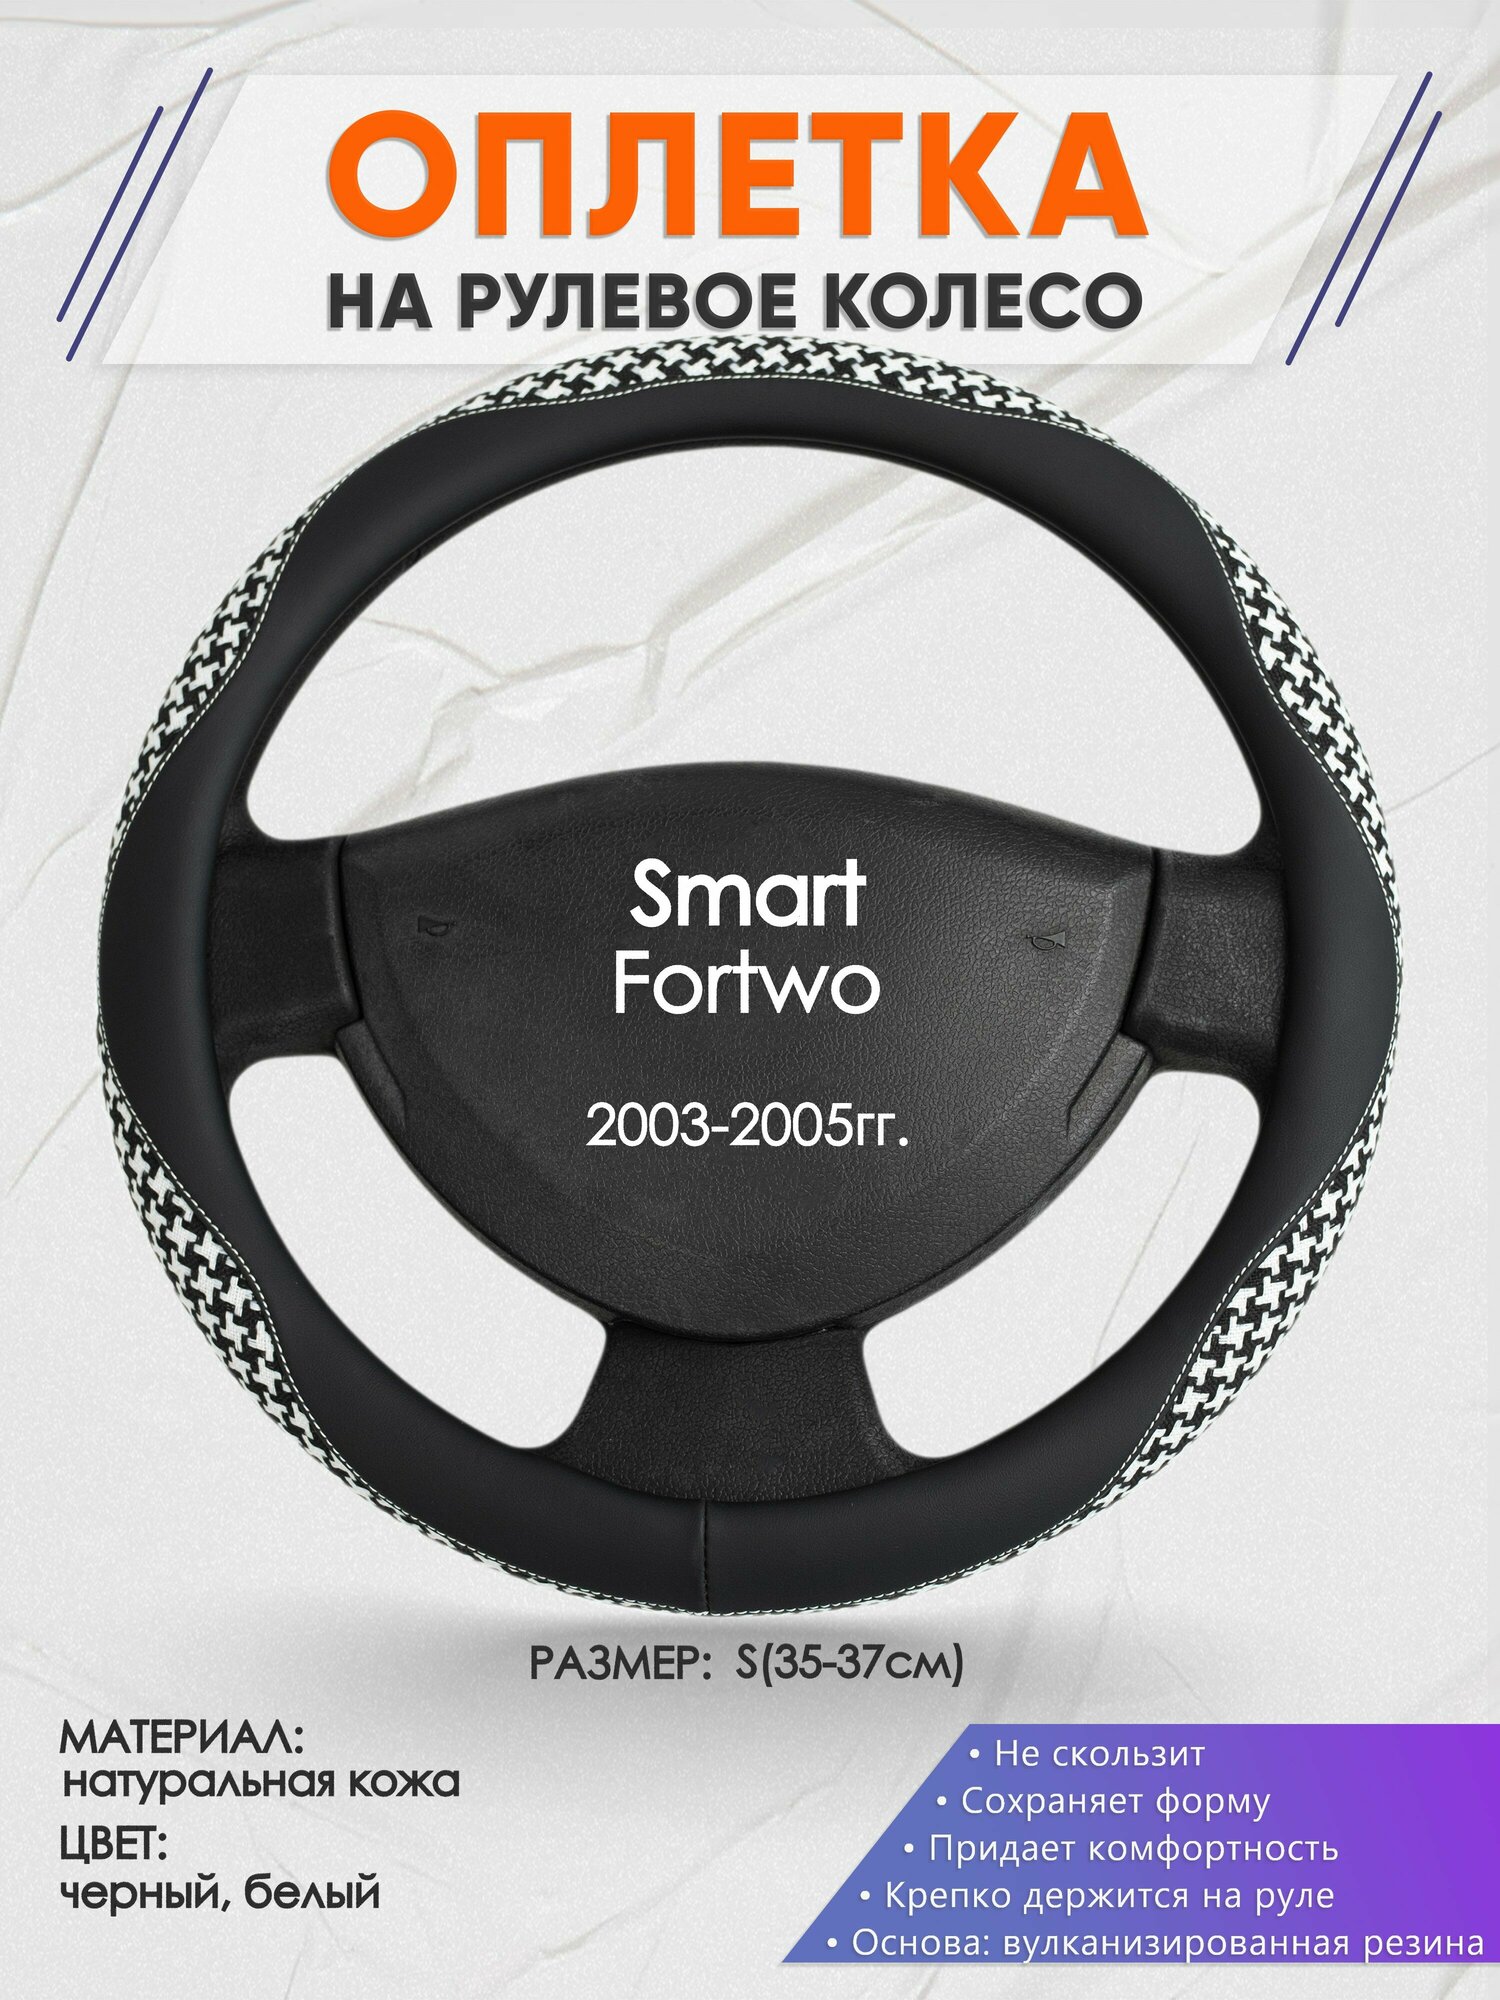 Оплетка на руль для Smart Fortwo(Смарт Фоту) 2003-2005, S(35-37см), Натуральная кожа 21